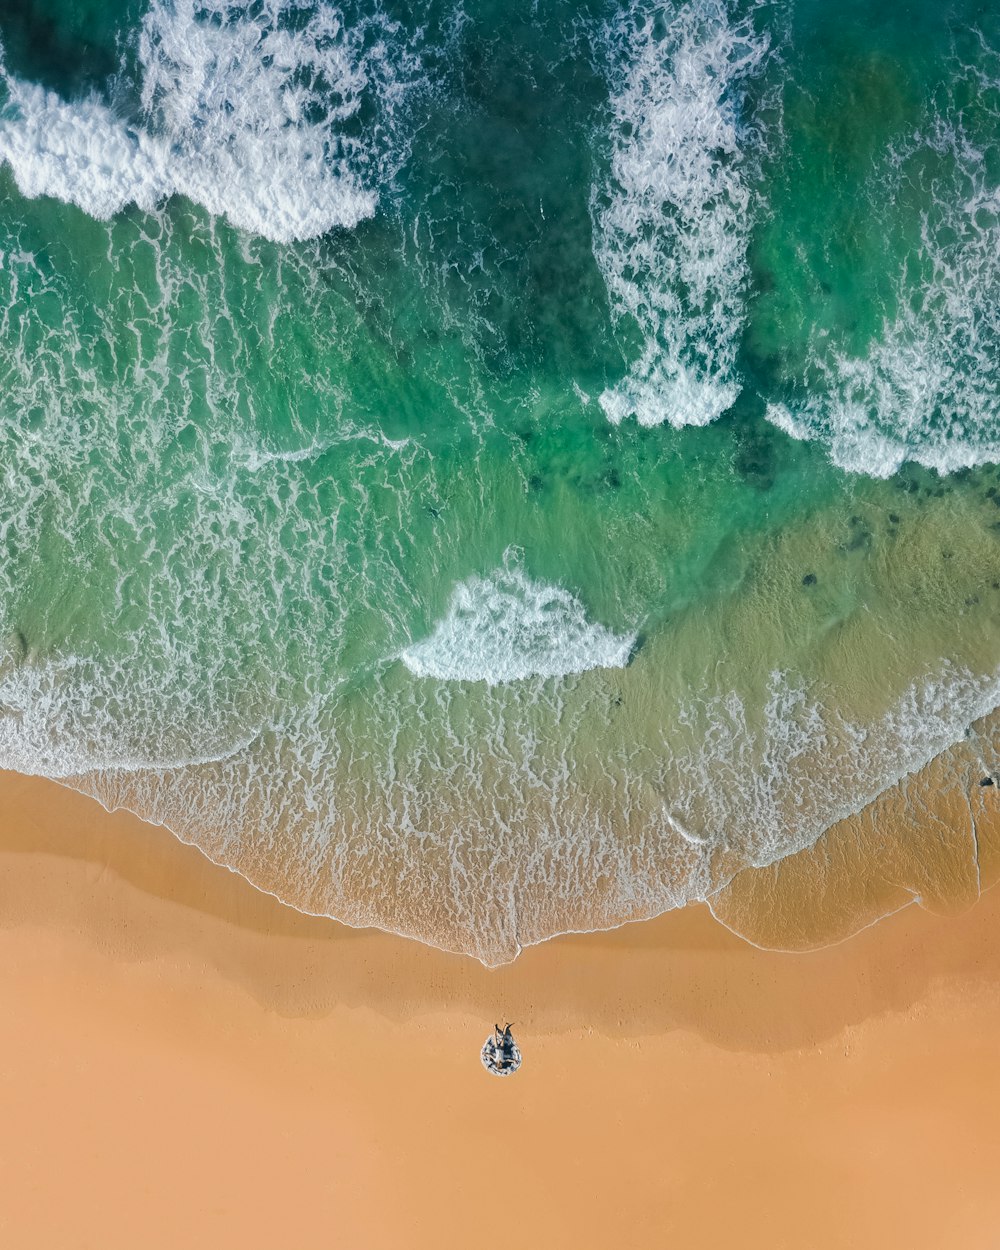 Fotografia con vista dall'alto di sabbia marrone sulla spiaggia con acqua verde acqua dell'oceano durante il giorno